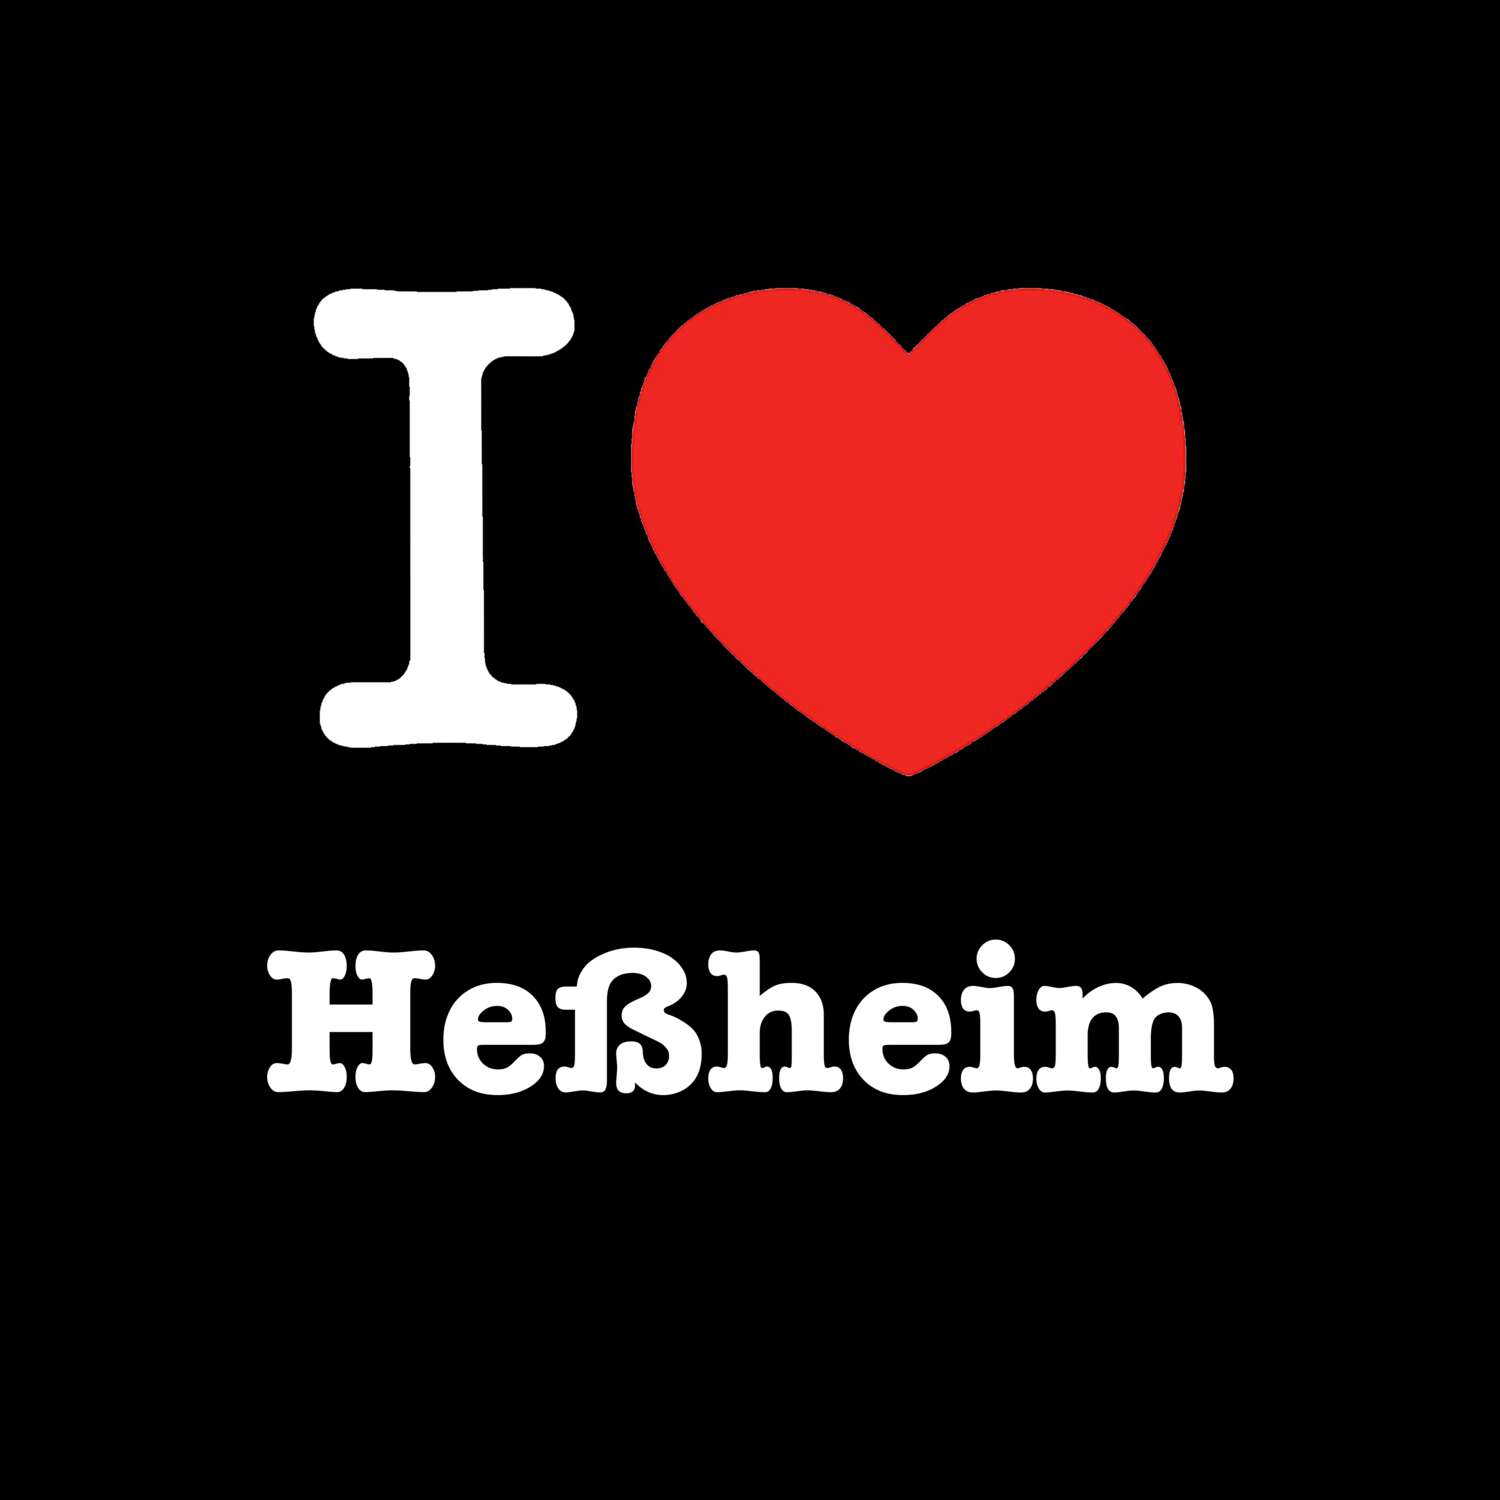 Heßheim T-Shirt »I love«